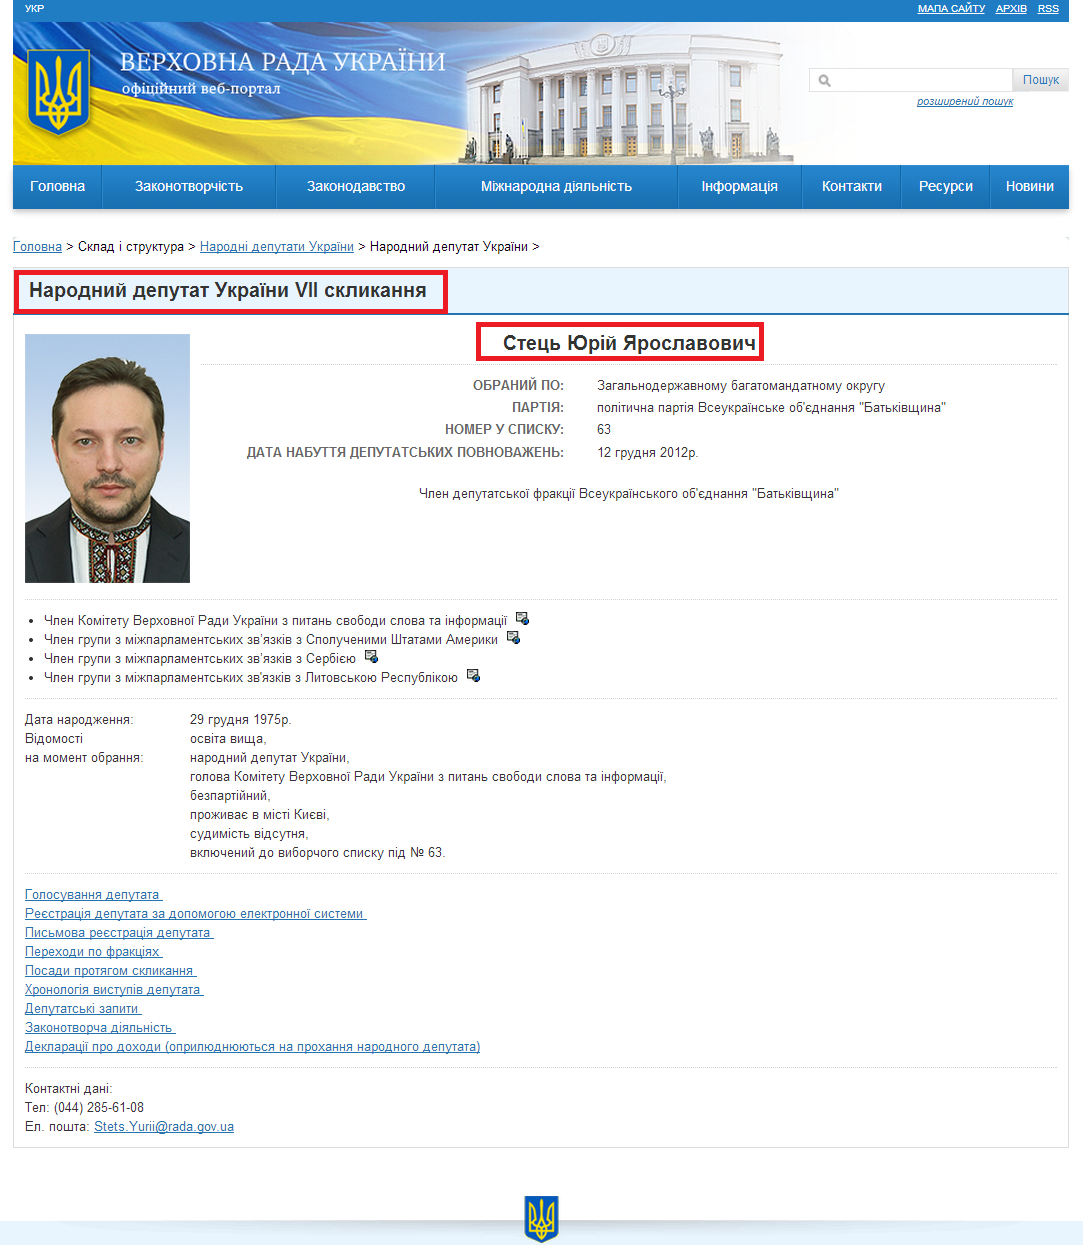 http://gapp.rada.gov.ua/mps/info/page/11129